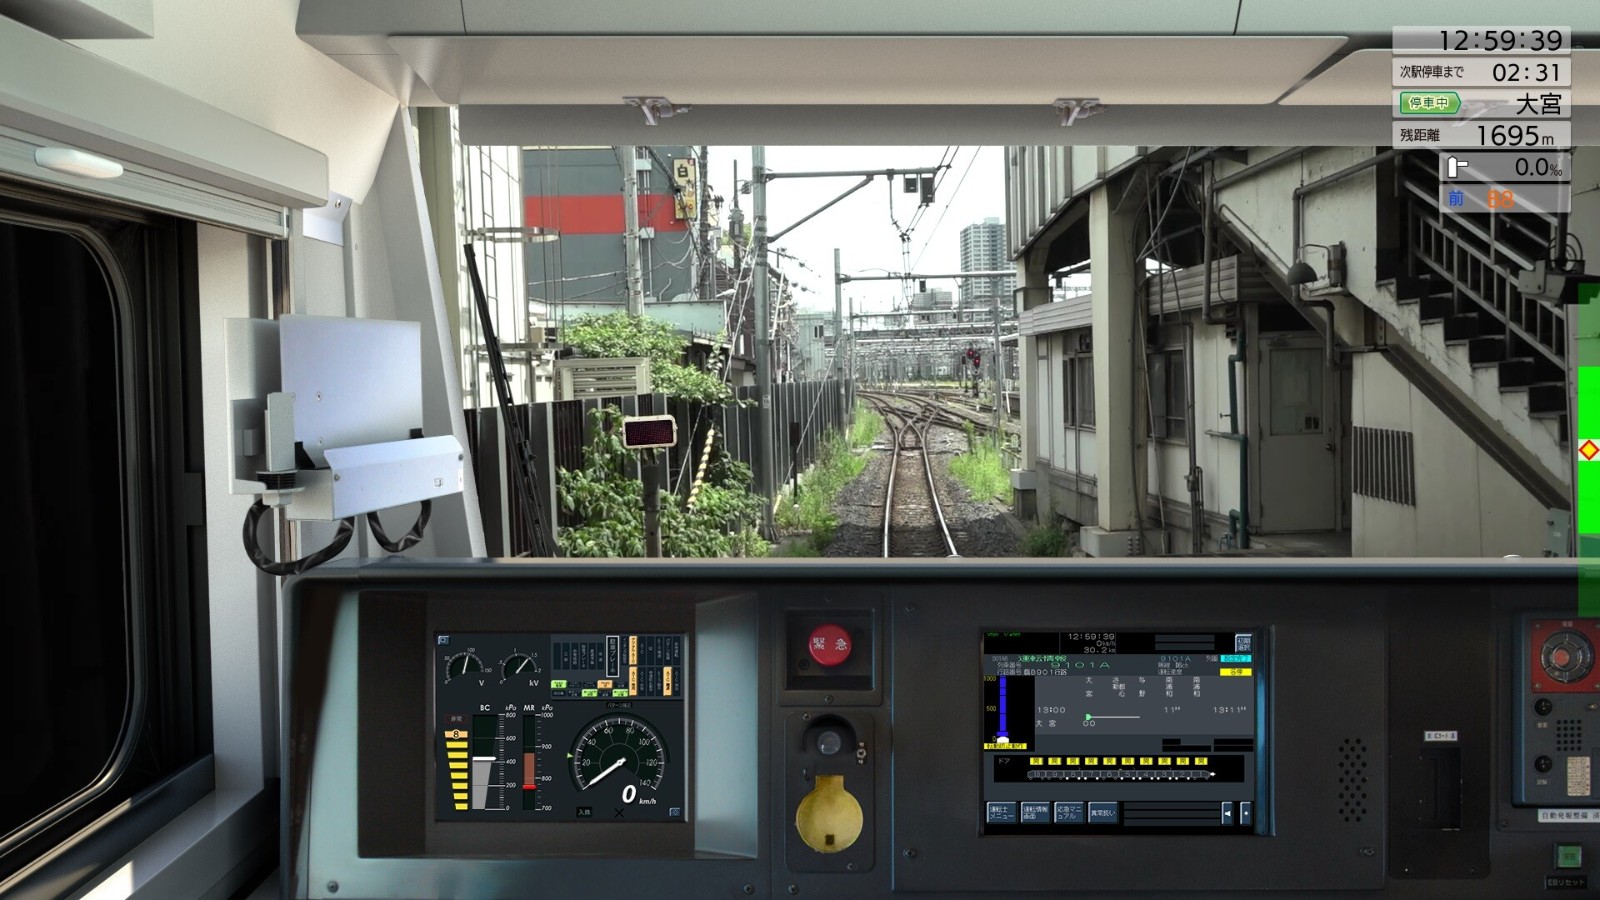 《JR东日本列车模拟器》上架Steam 专业级模拟开电车